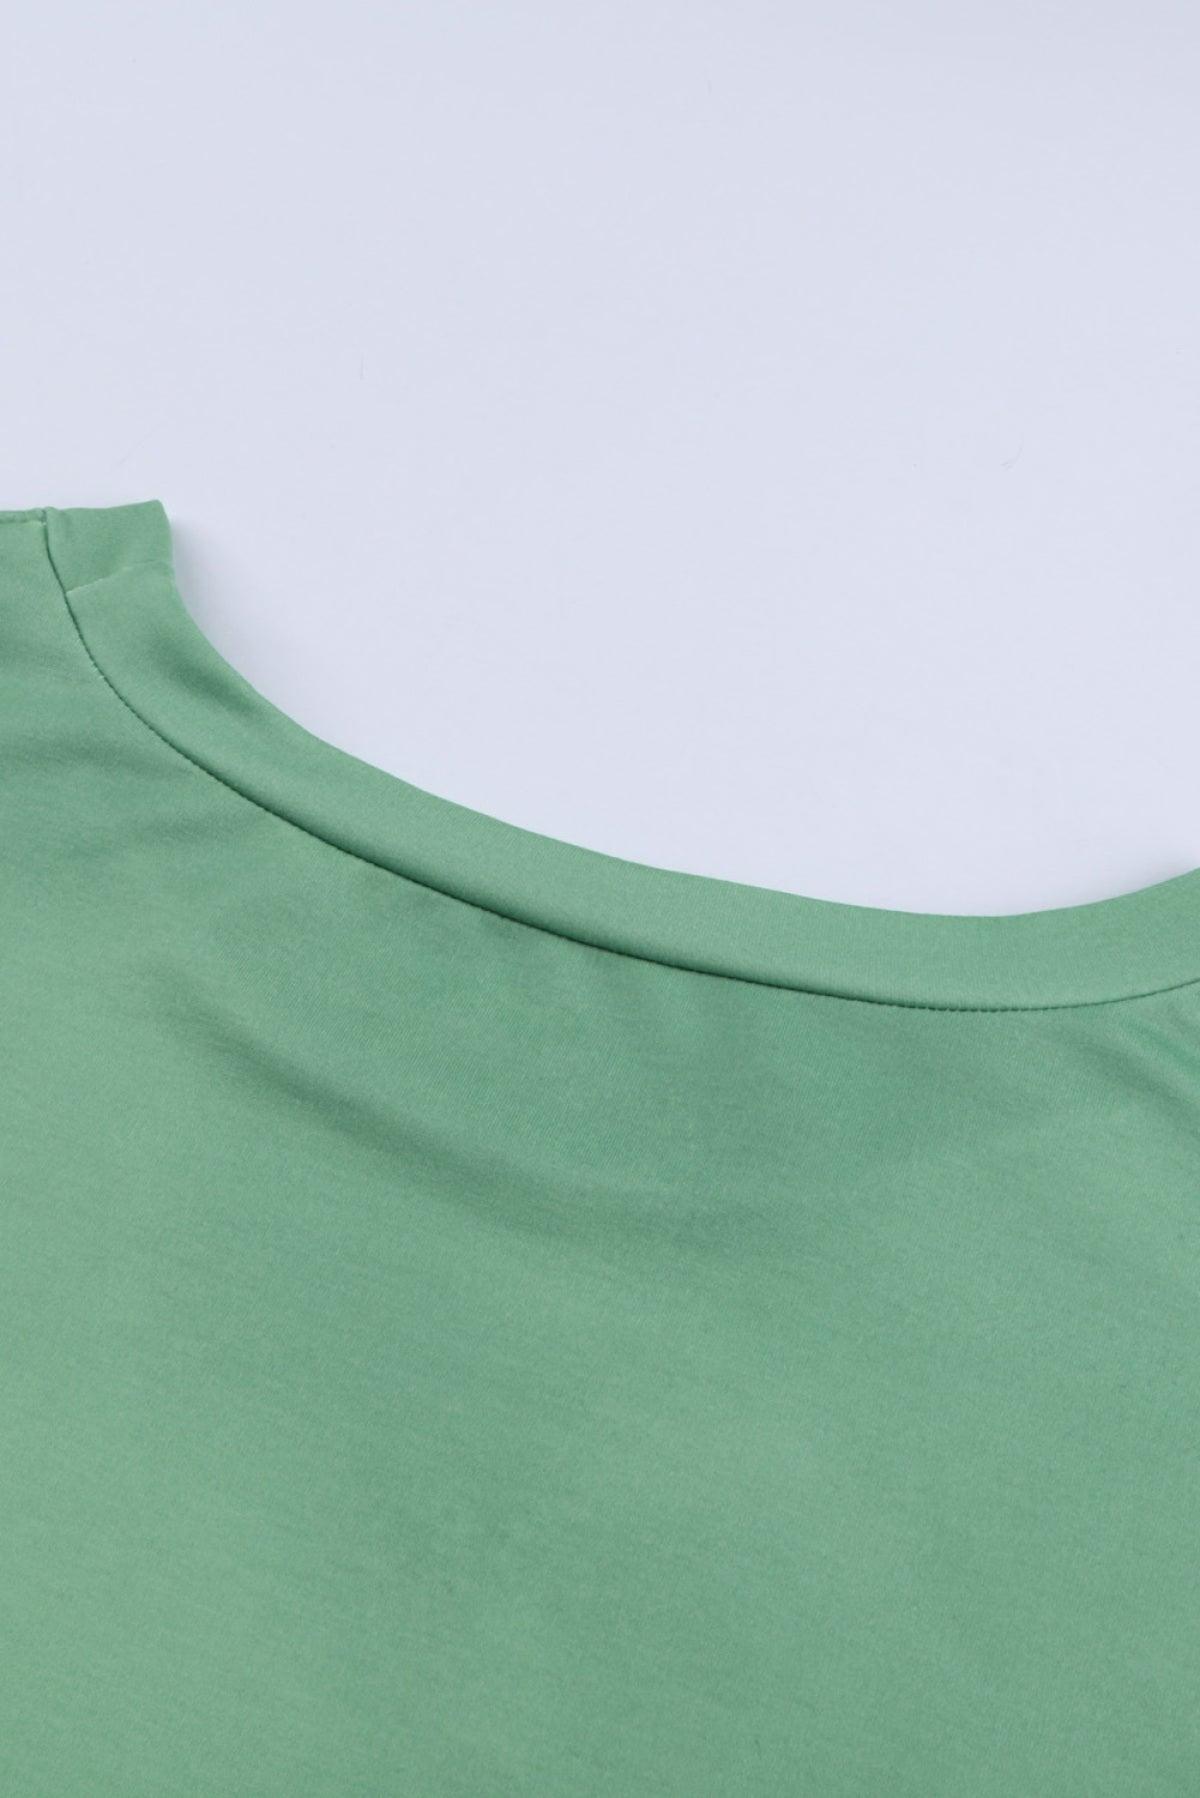 Green Reindeer Print Gradient Colorblock Sweatshirt